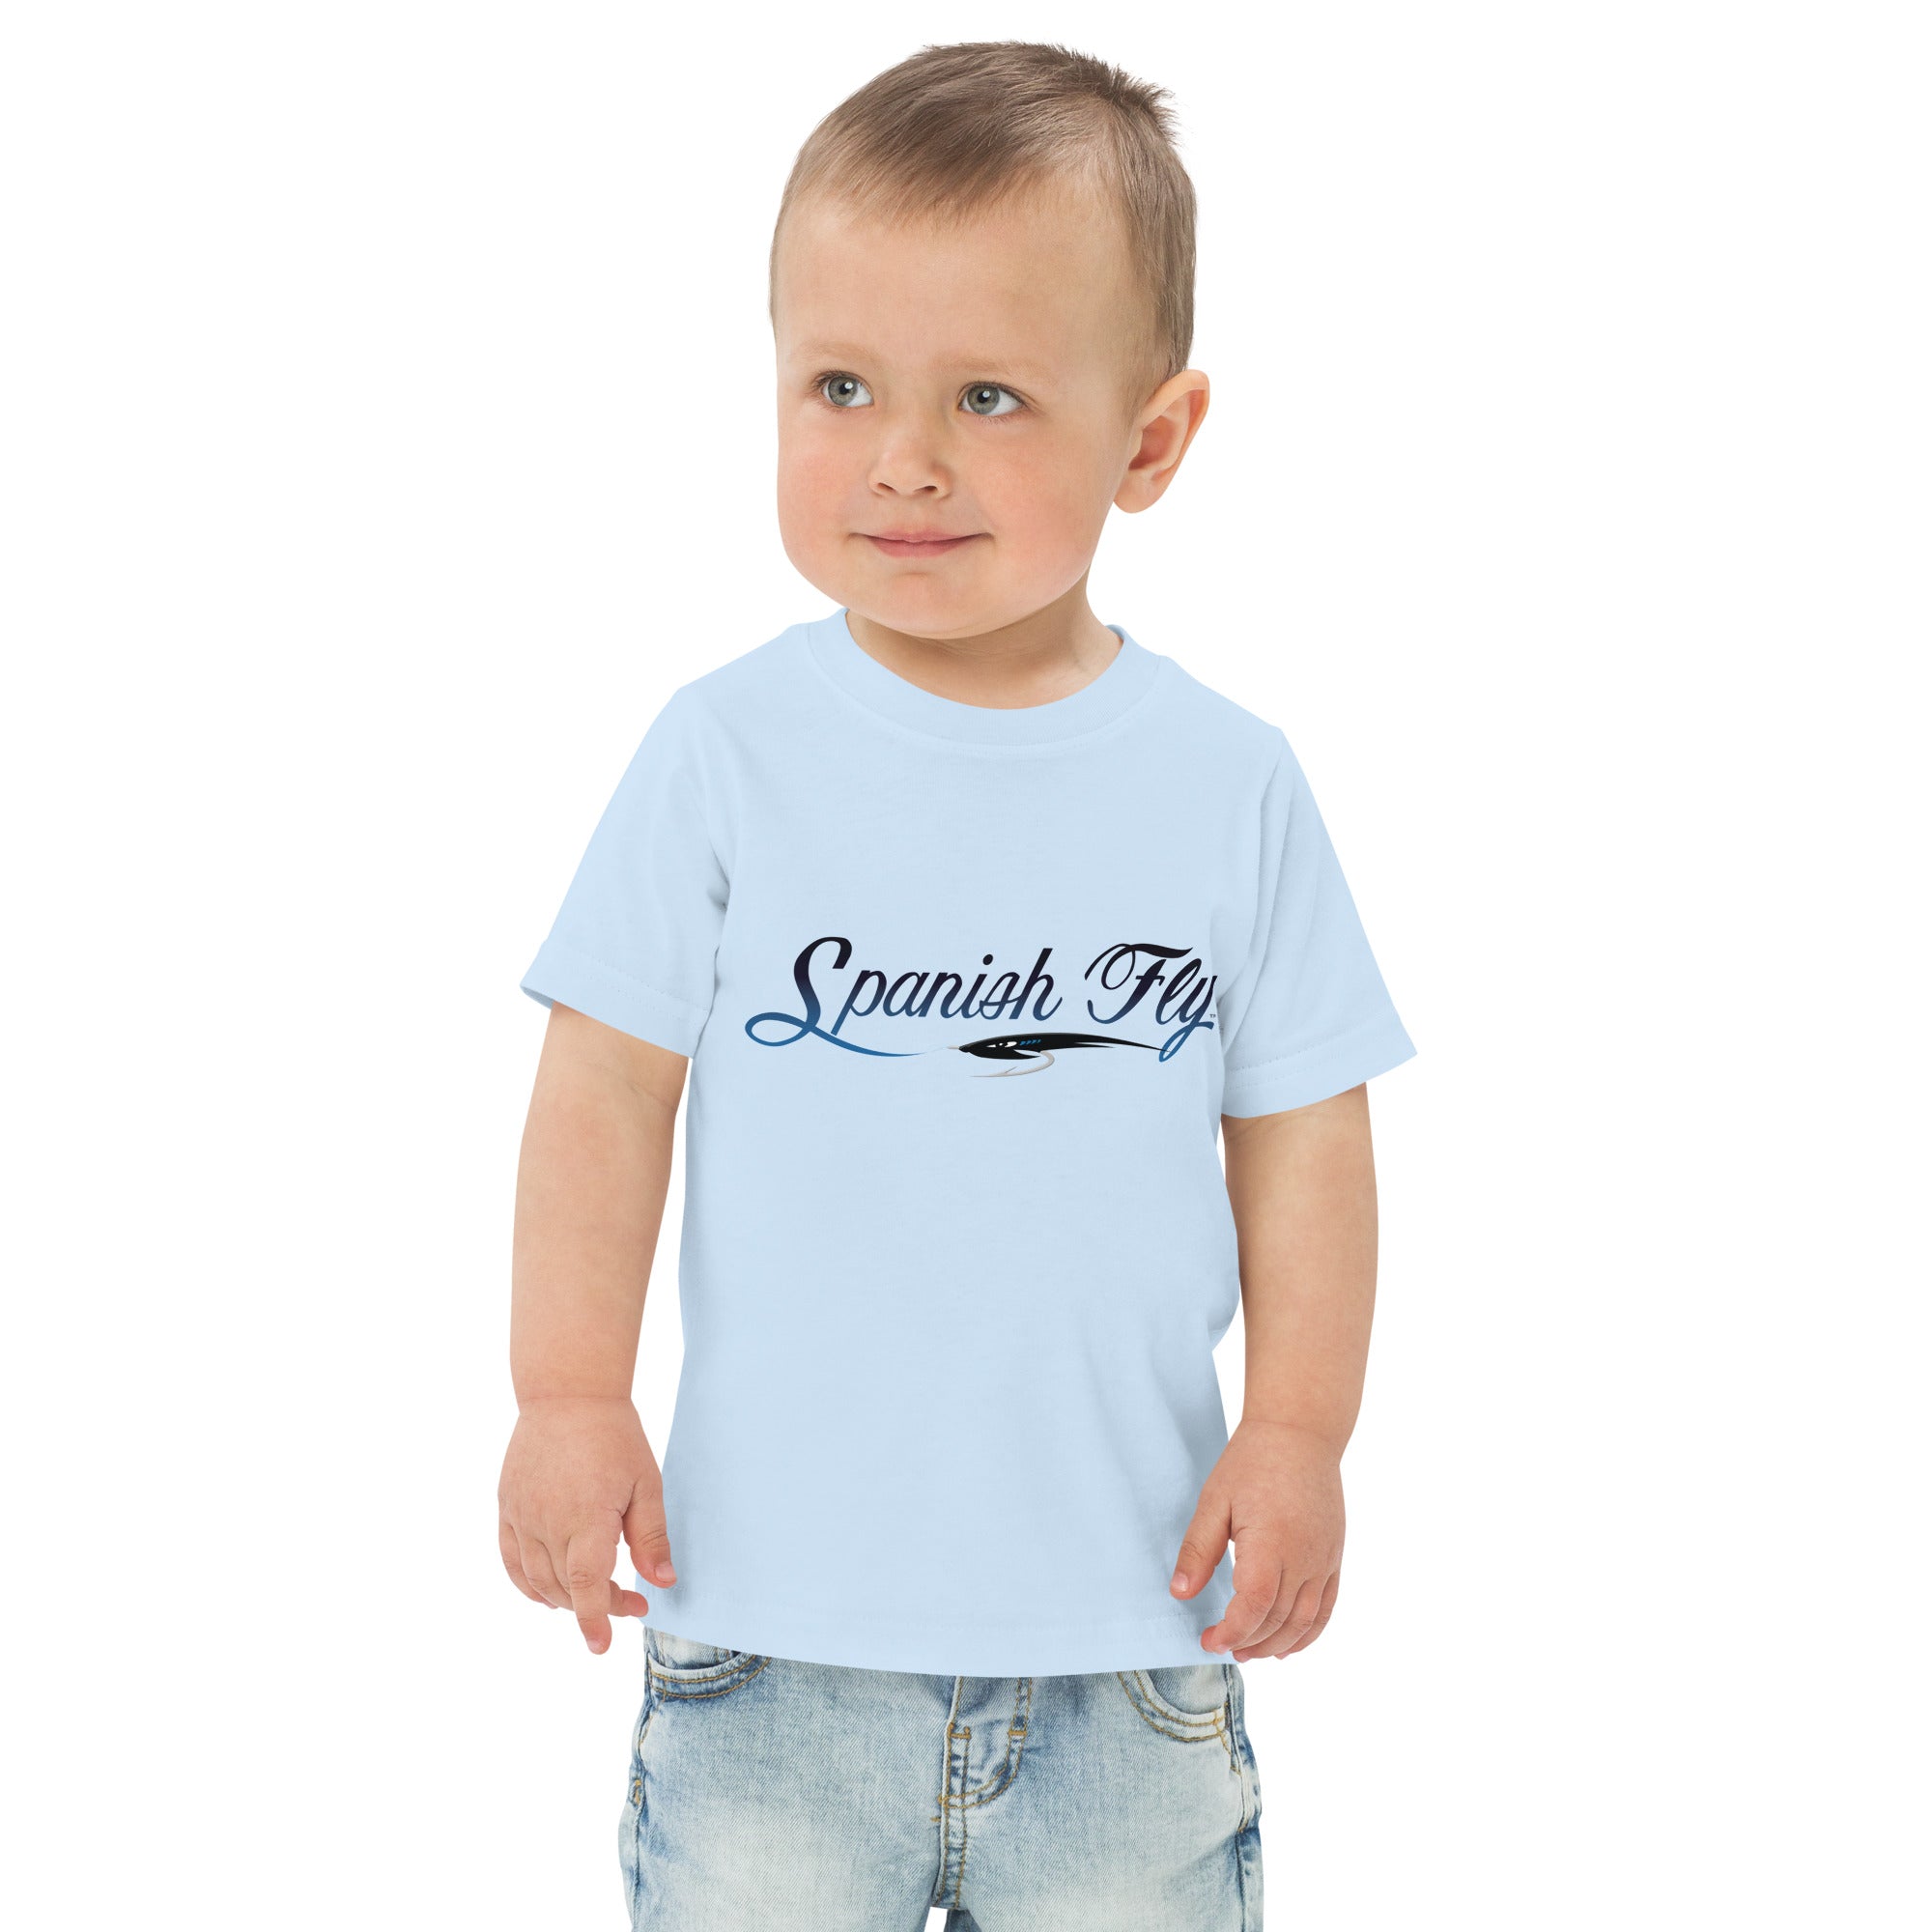 toddler-jersey-t-shirt-light-blue-front-639cbabcf3532.jpg